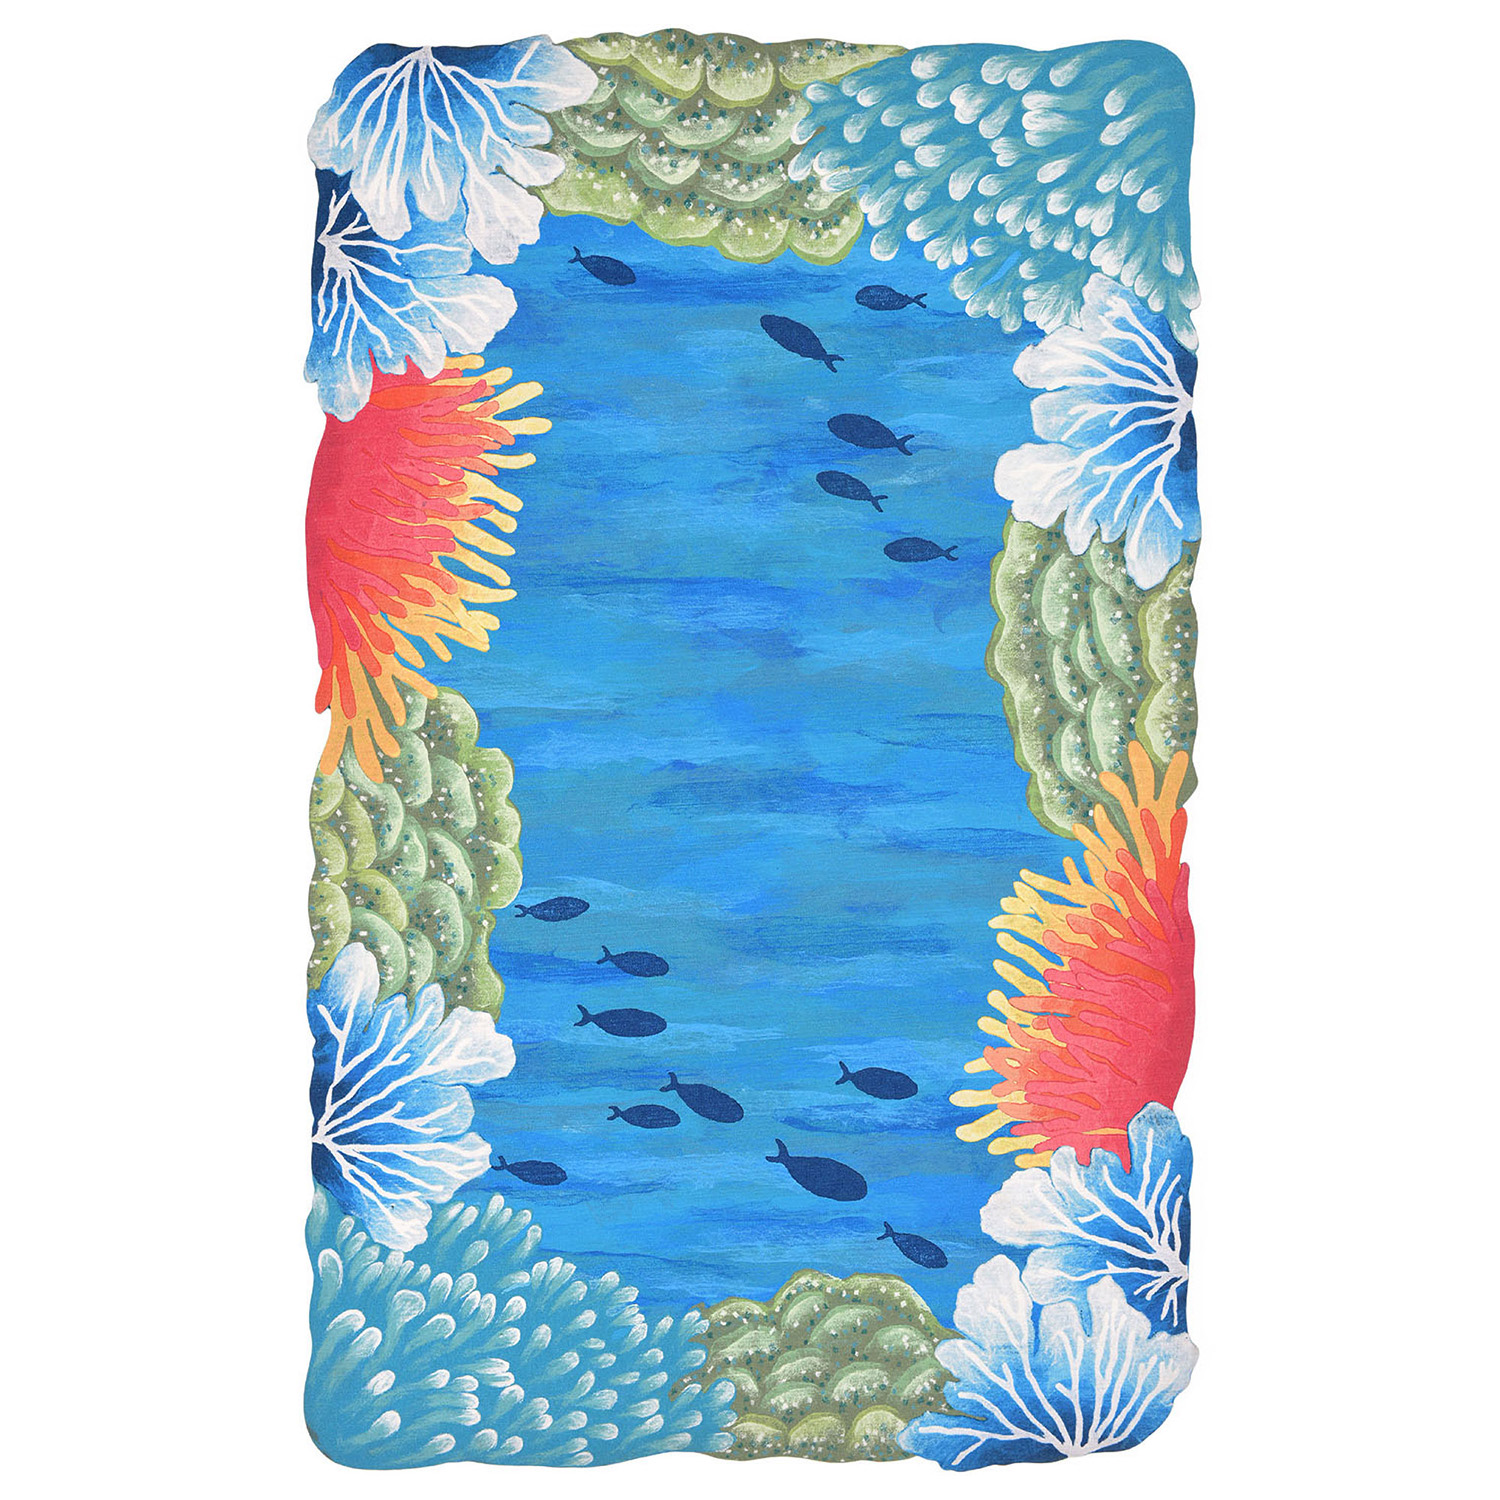 Liora Manne Visions IV  Rug-Border, Reef Border Blue  Product Image